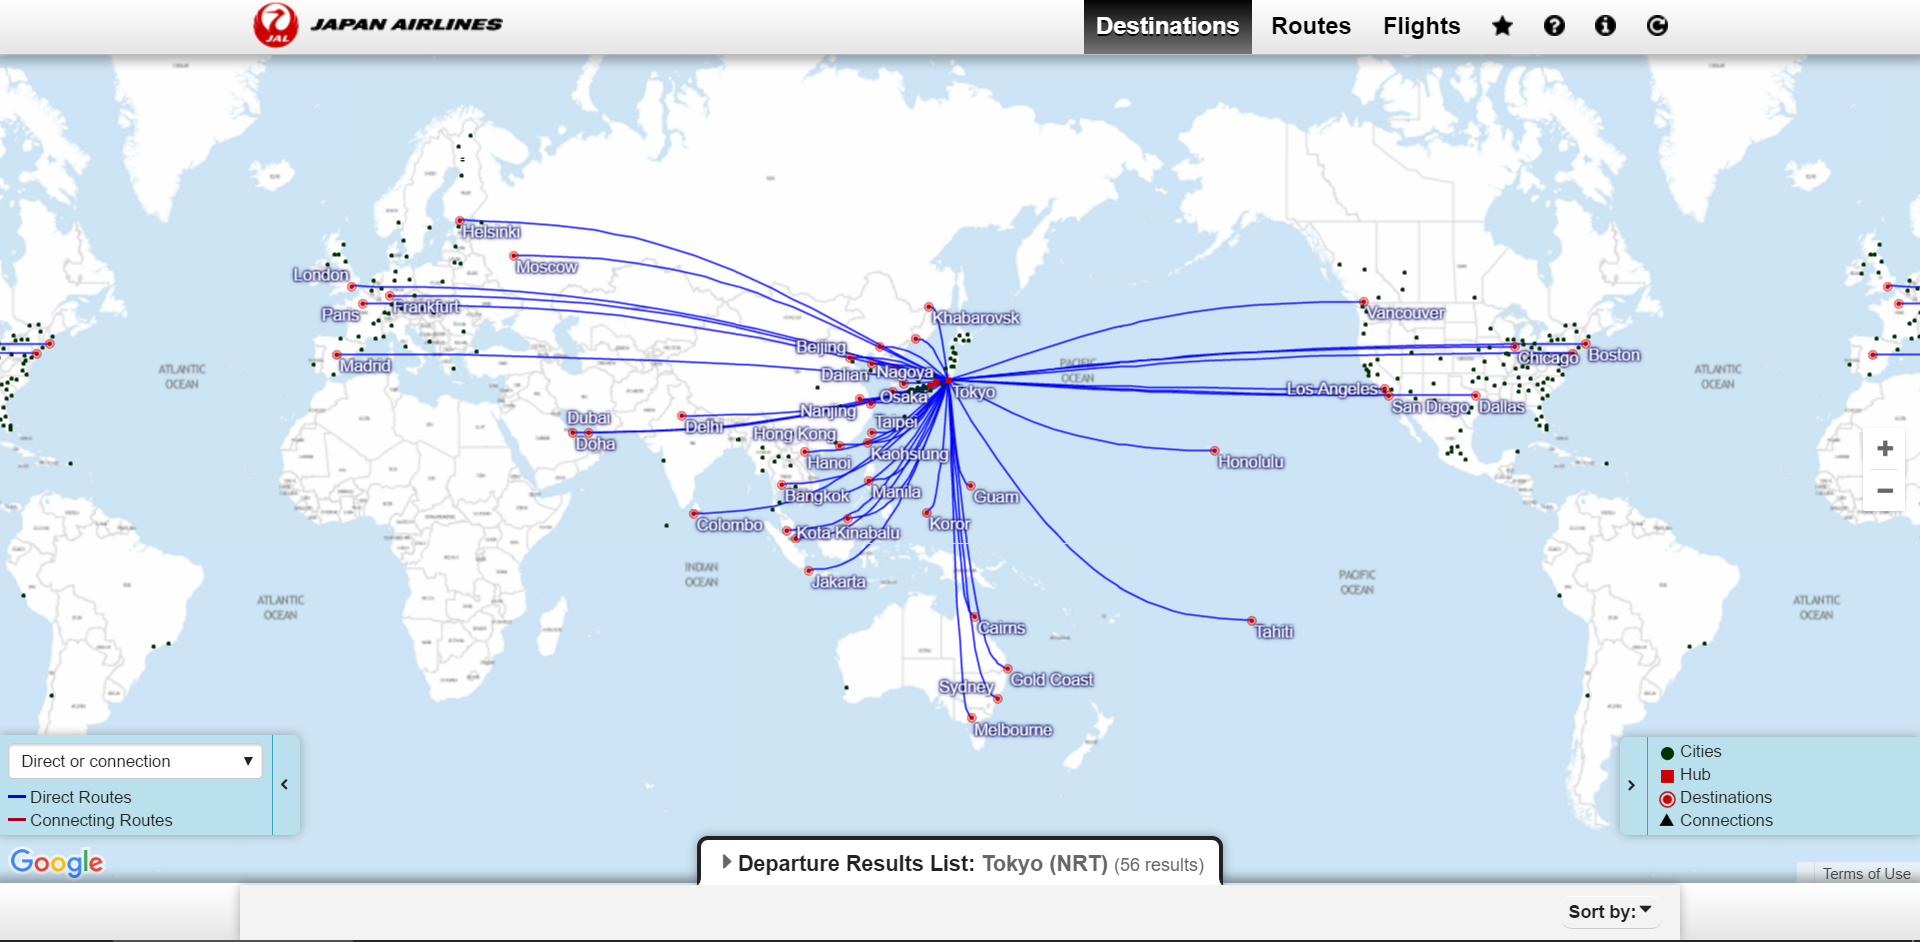 Japan Airlines карта полетов. Ryanair карта полетов. Карта полетов японских авиалиний. Карта полетов JAL. Маршрутная сеть авиакомпания